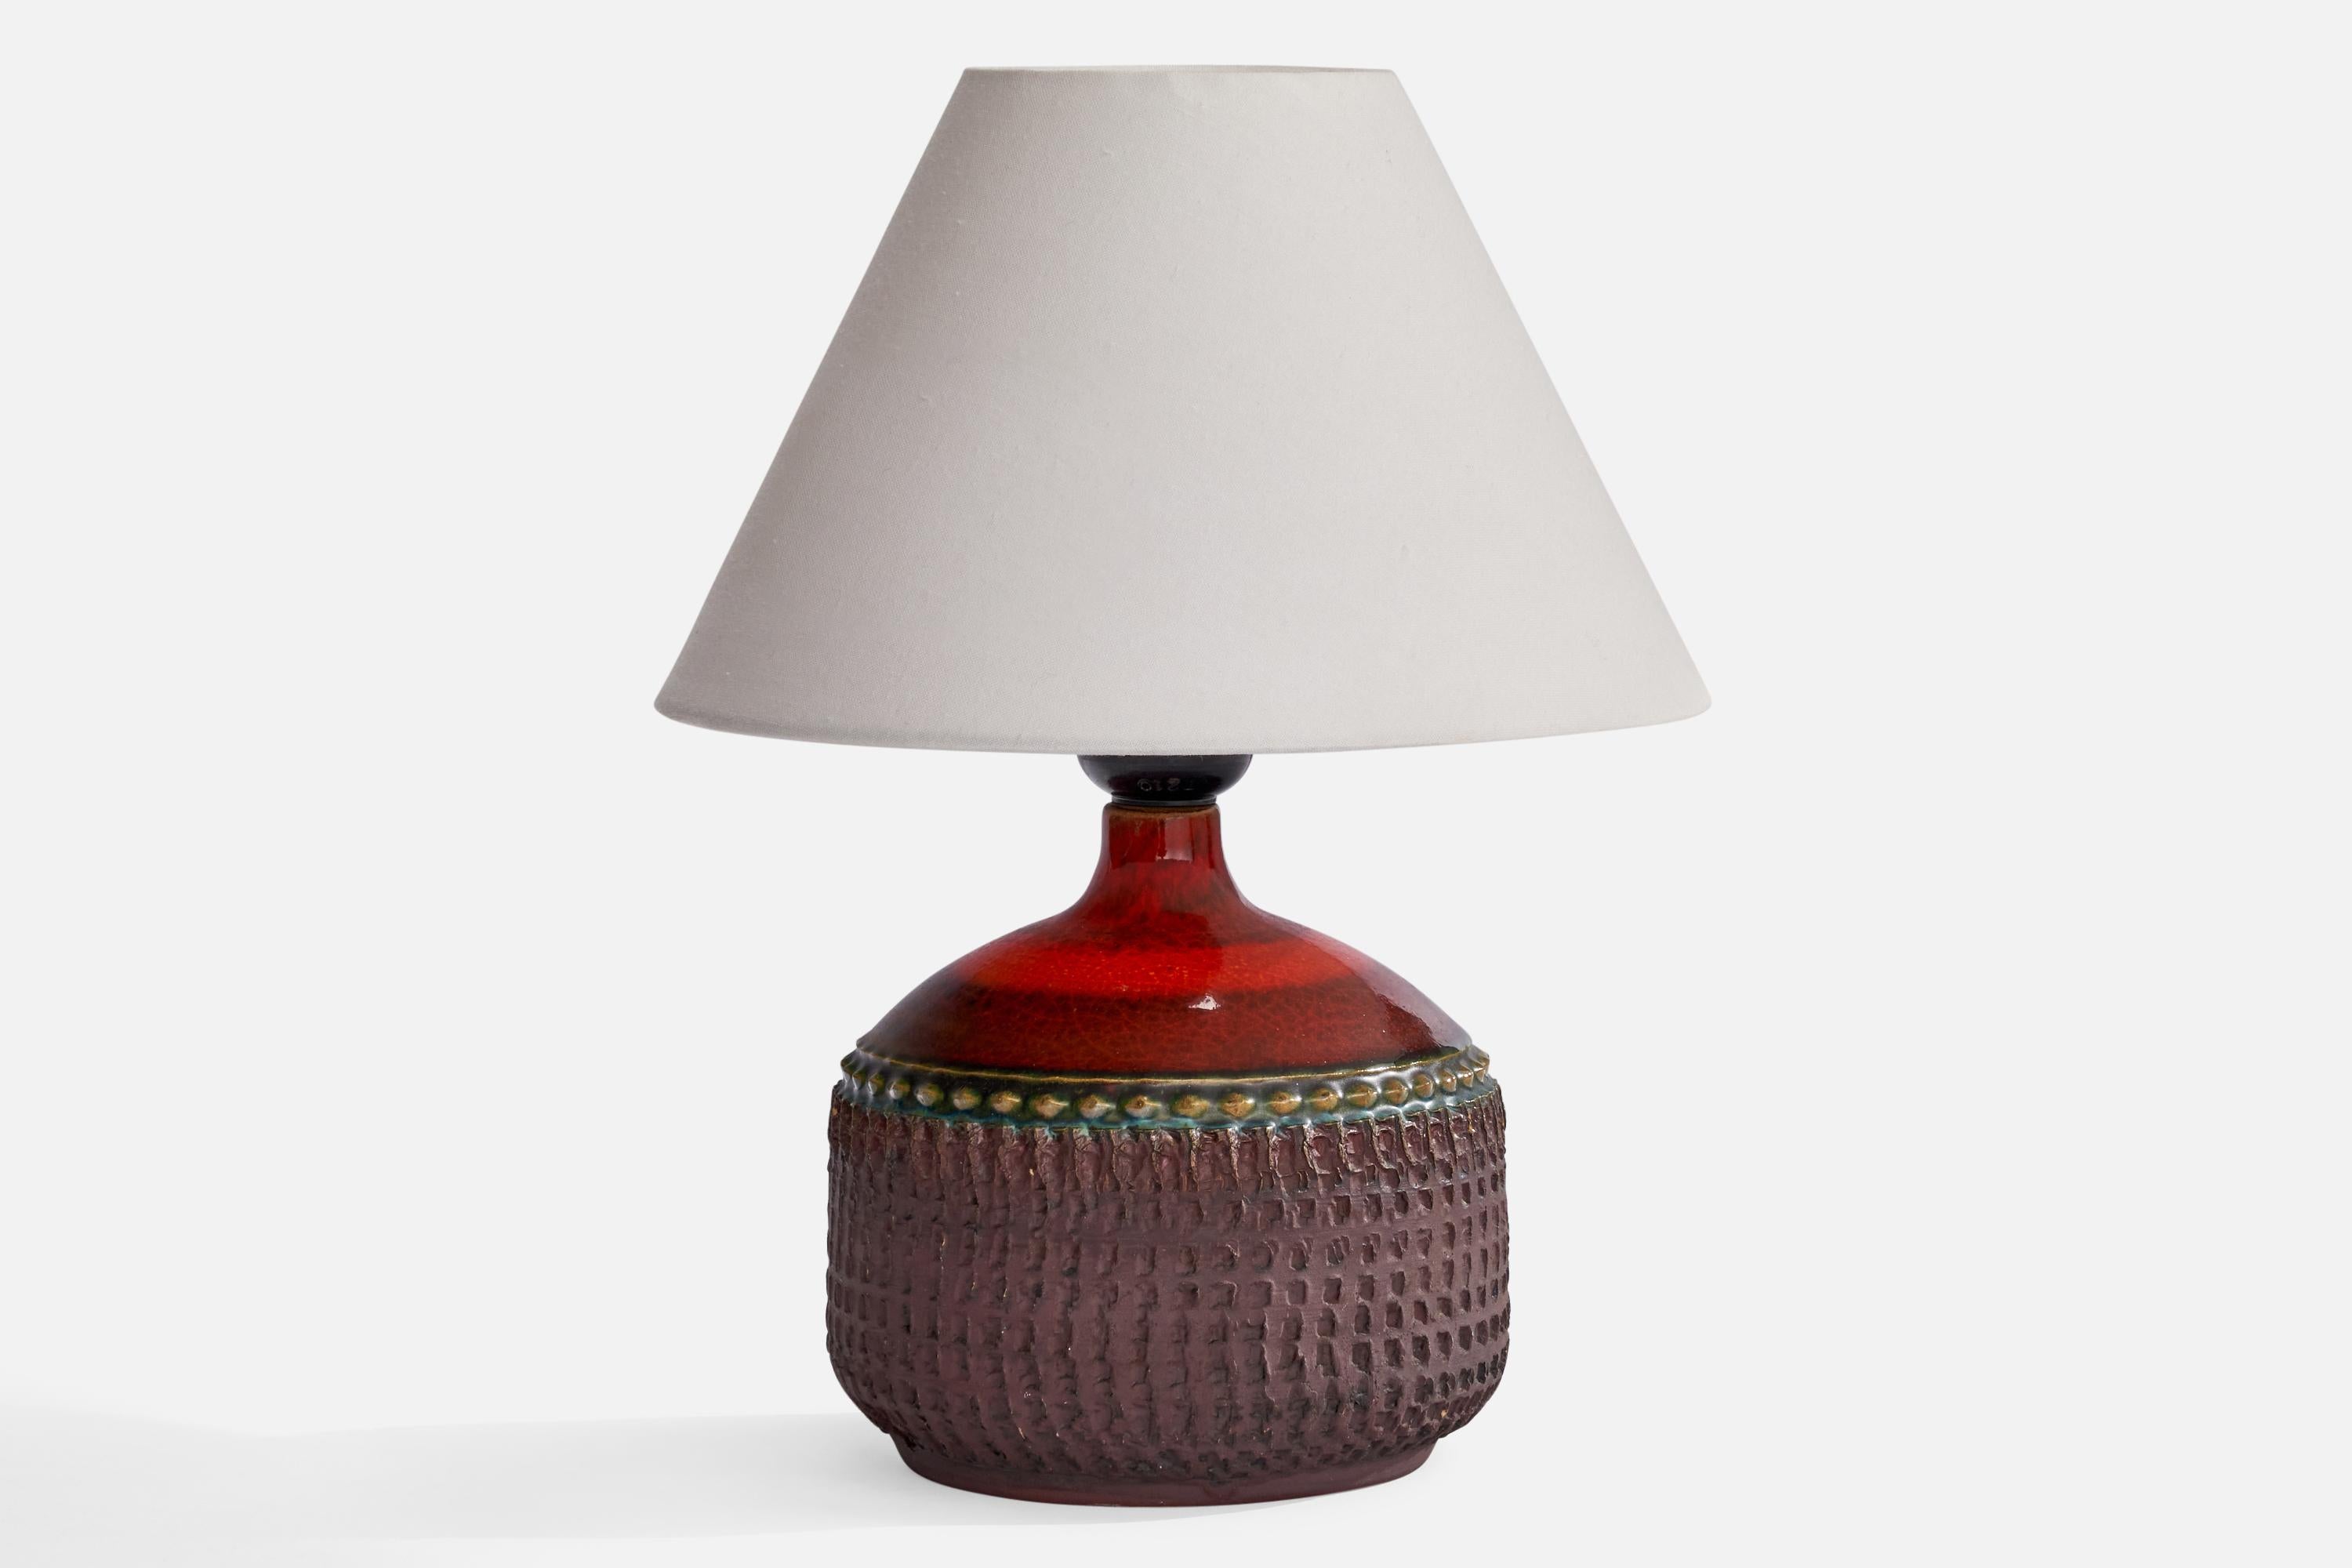 Tischlampe aus rotem und violett glasiertem Steingut, entworfen und hergestellt von Klase Höganäs, Schweden, 1960er Jahre.

Abmessungen der Lampe (Zoll): 7,5